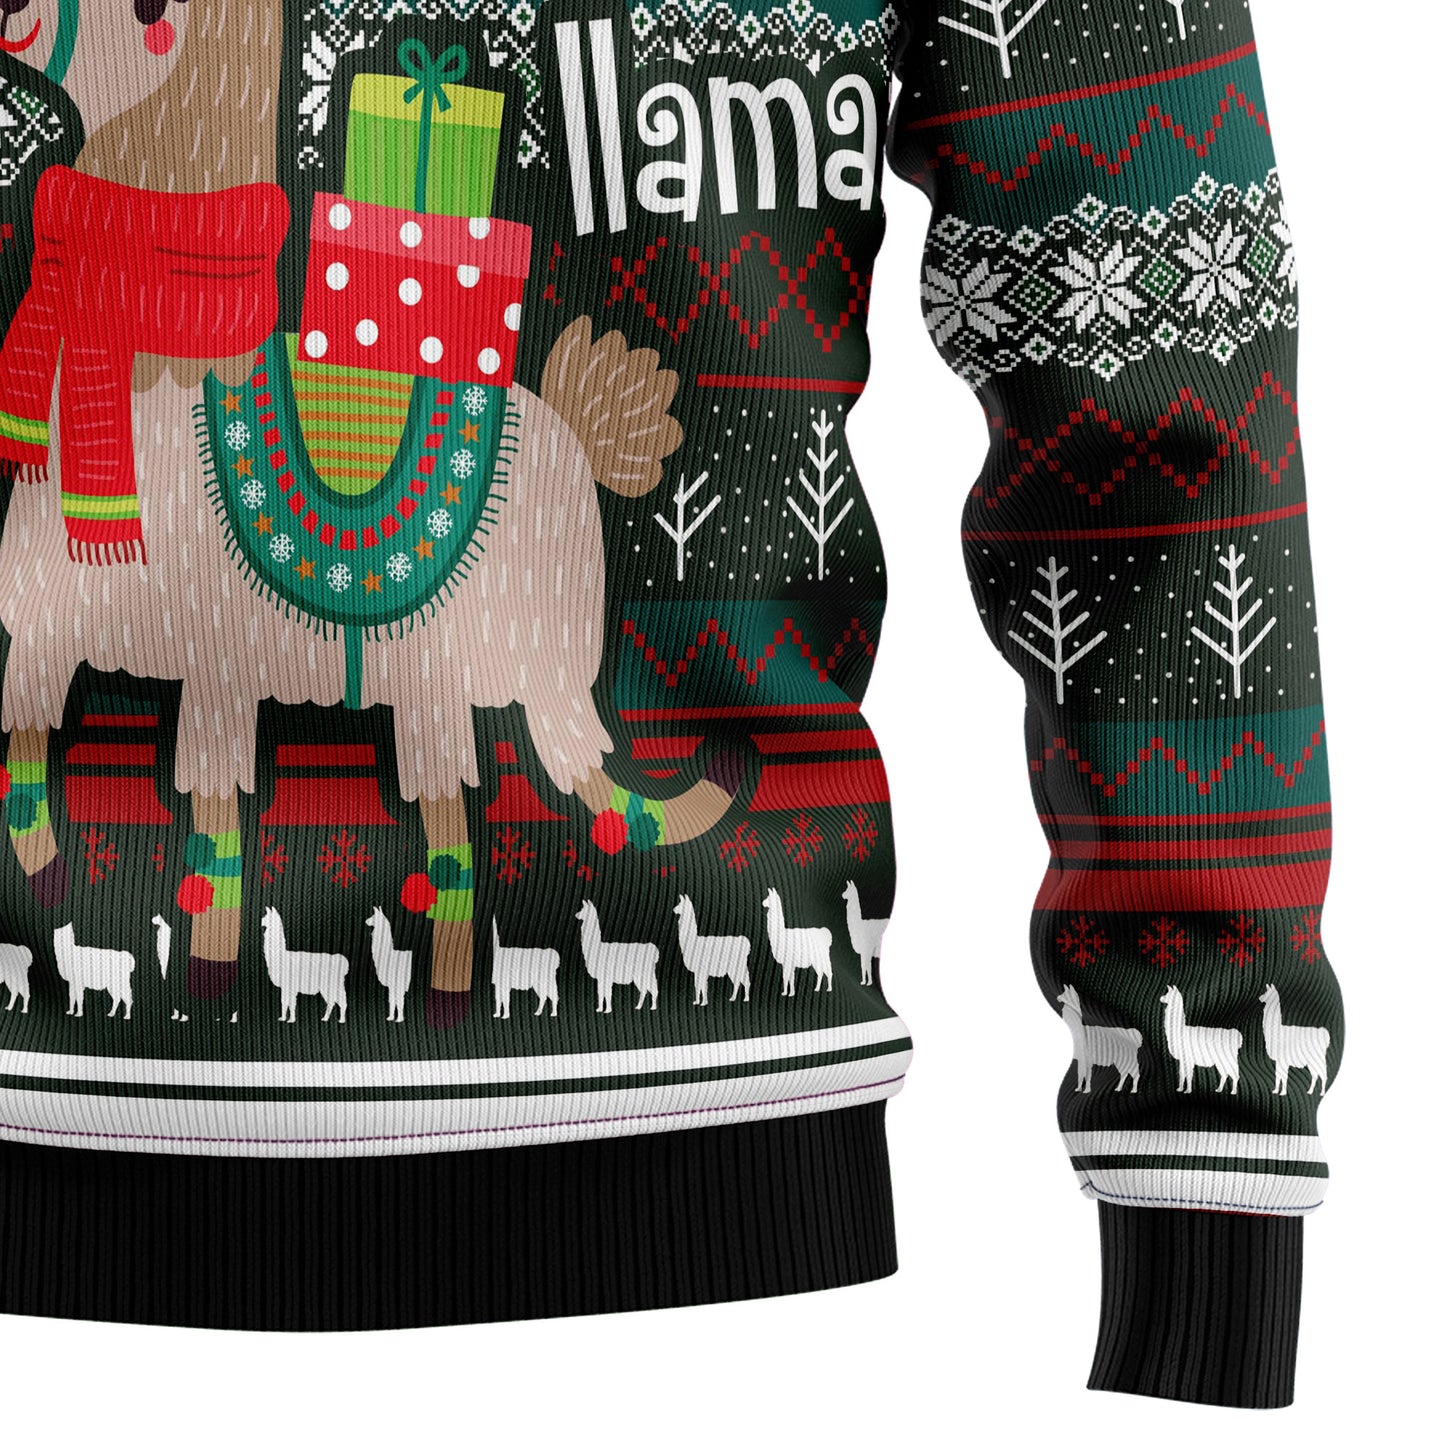 Fa-La-La-La-Llama G51124 Ugly Christmas Sweater